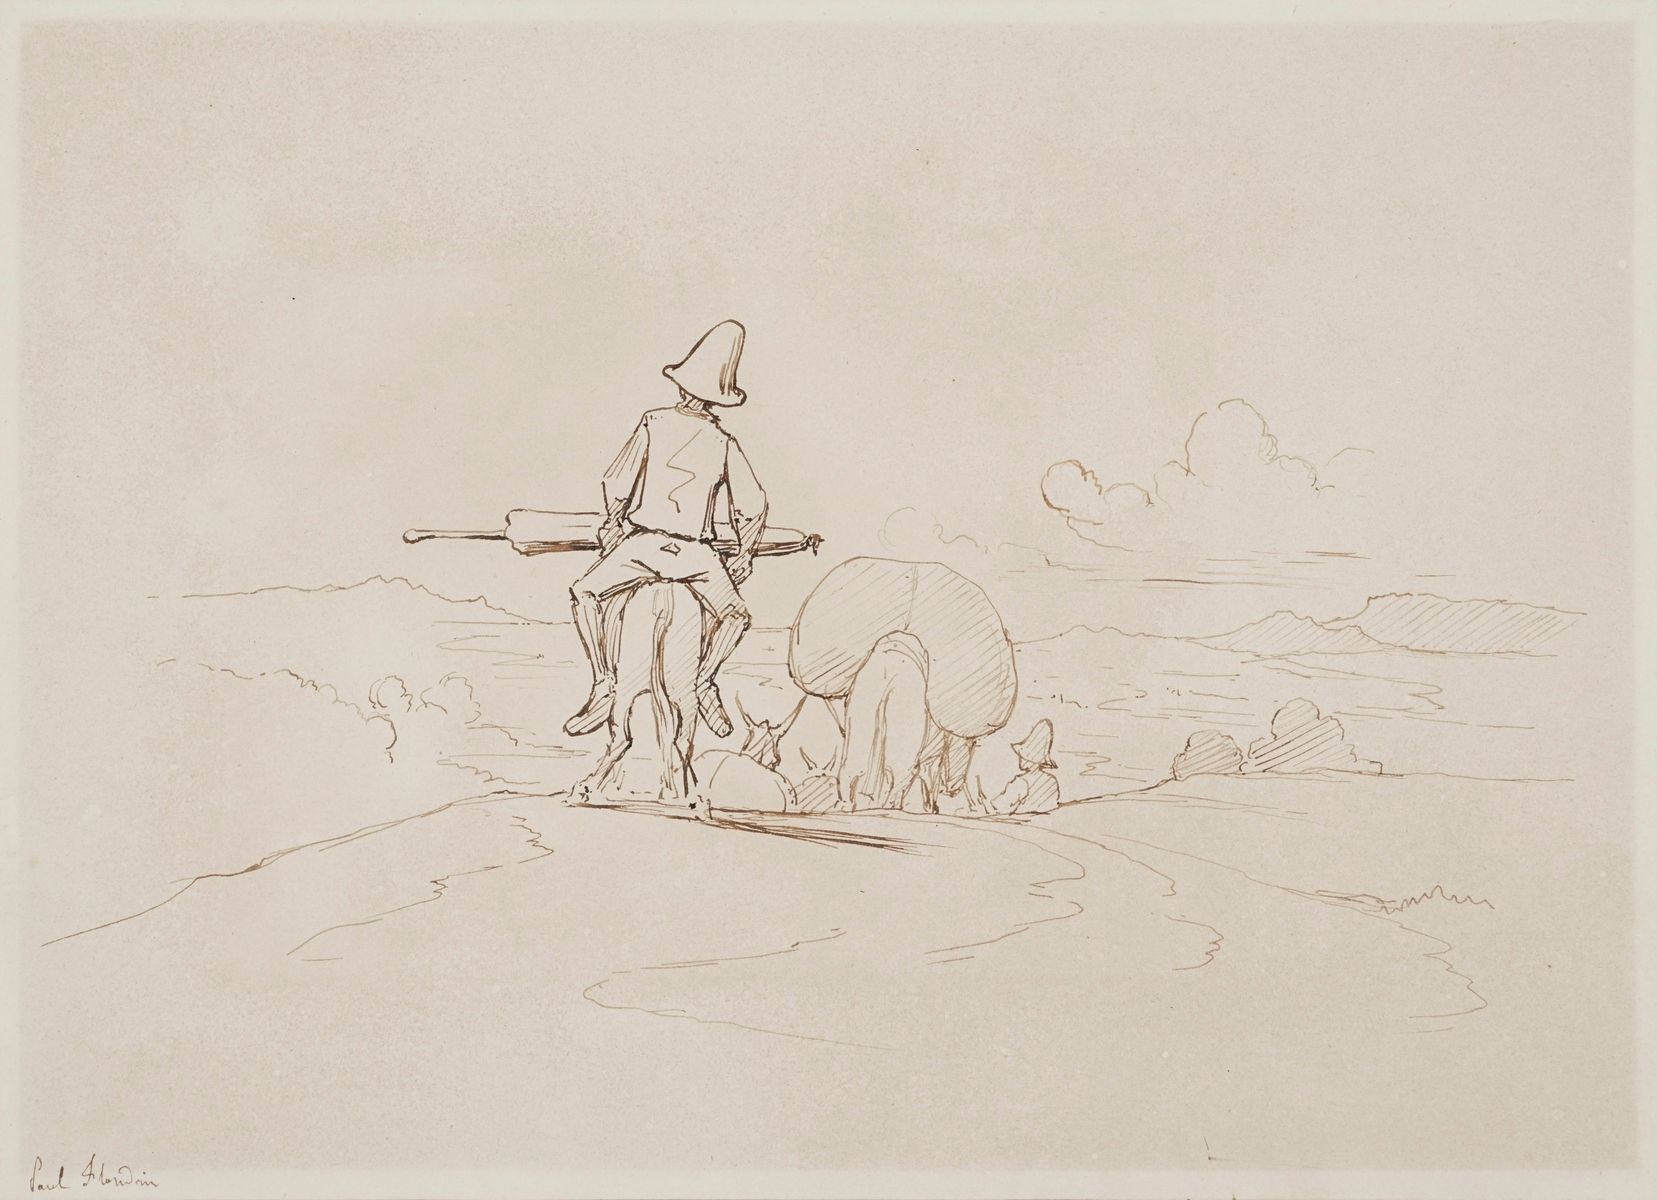 Null 弗朗德林-保罗，1811-1902年
驴子上的旅行者，两幅纸上笔墨画（稍有晒伤），每幅都有左下角签名，其中一幅有1849年的日期，每幅18 x 23.&hellip;